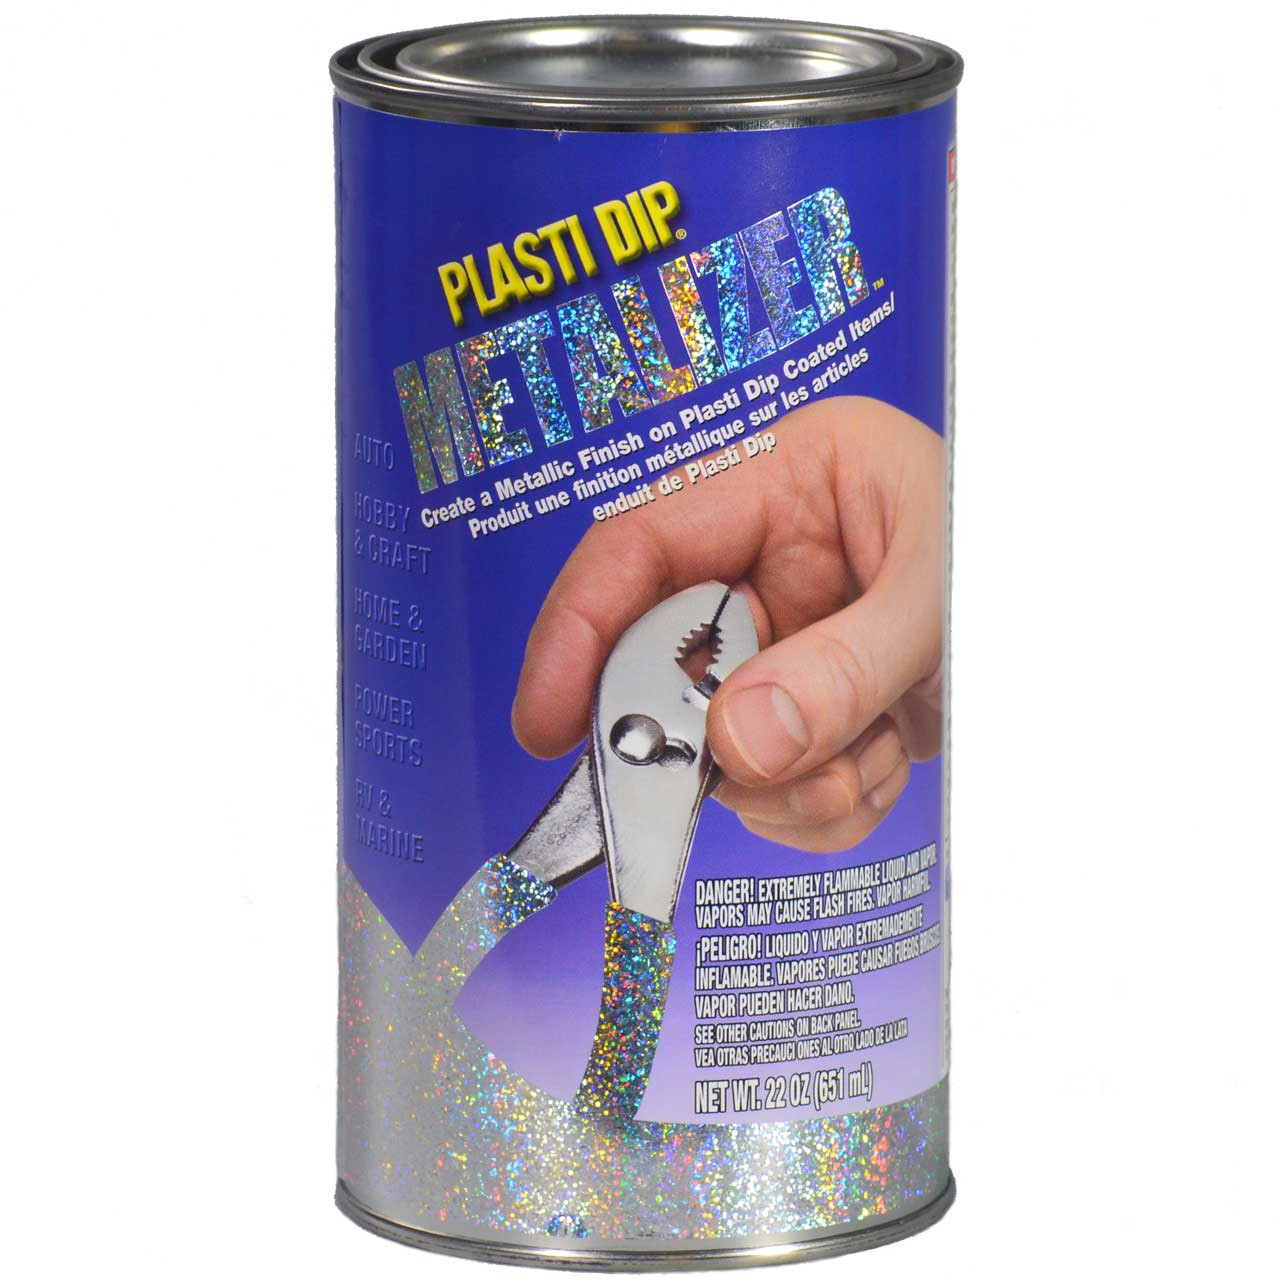 Plasti Dip 5 gallon Rubber Coating - AWarehouseFull